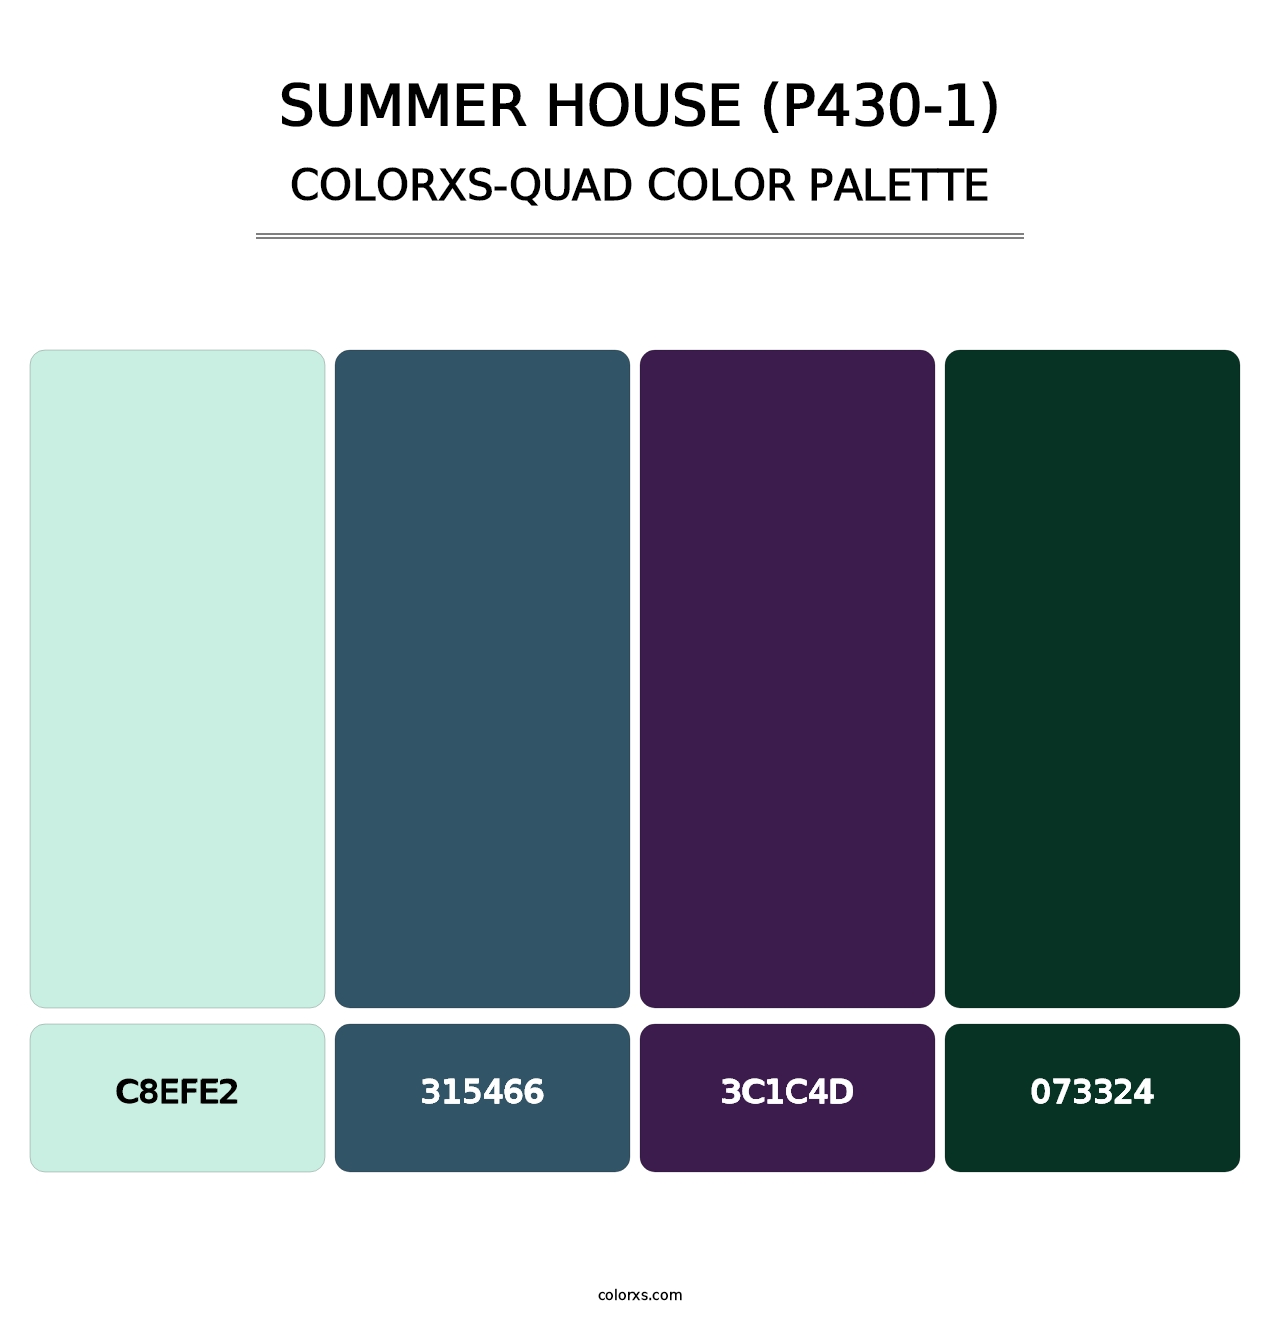 Summer House (P430-1) - Colorxs Quad Palette